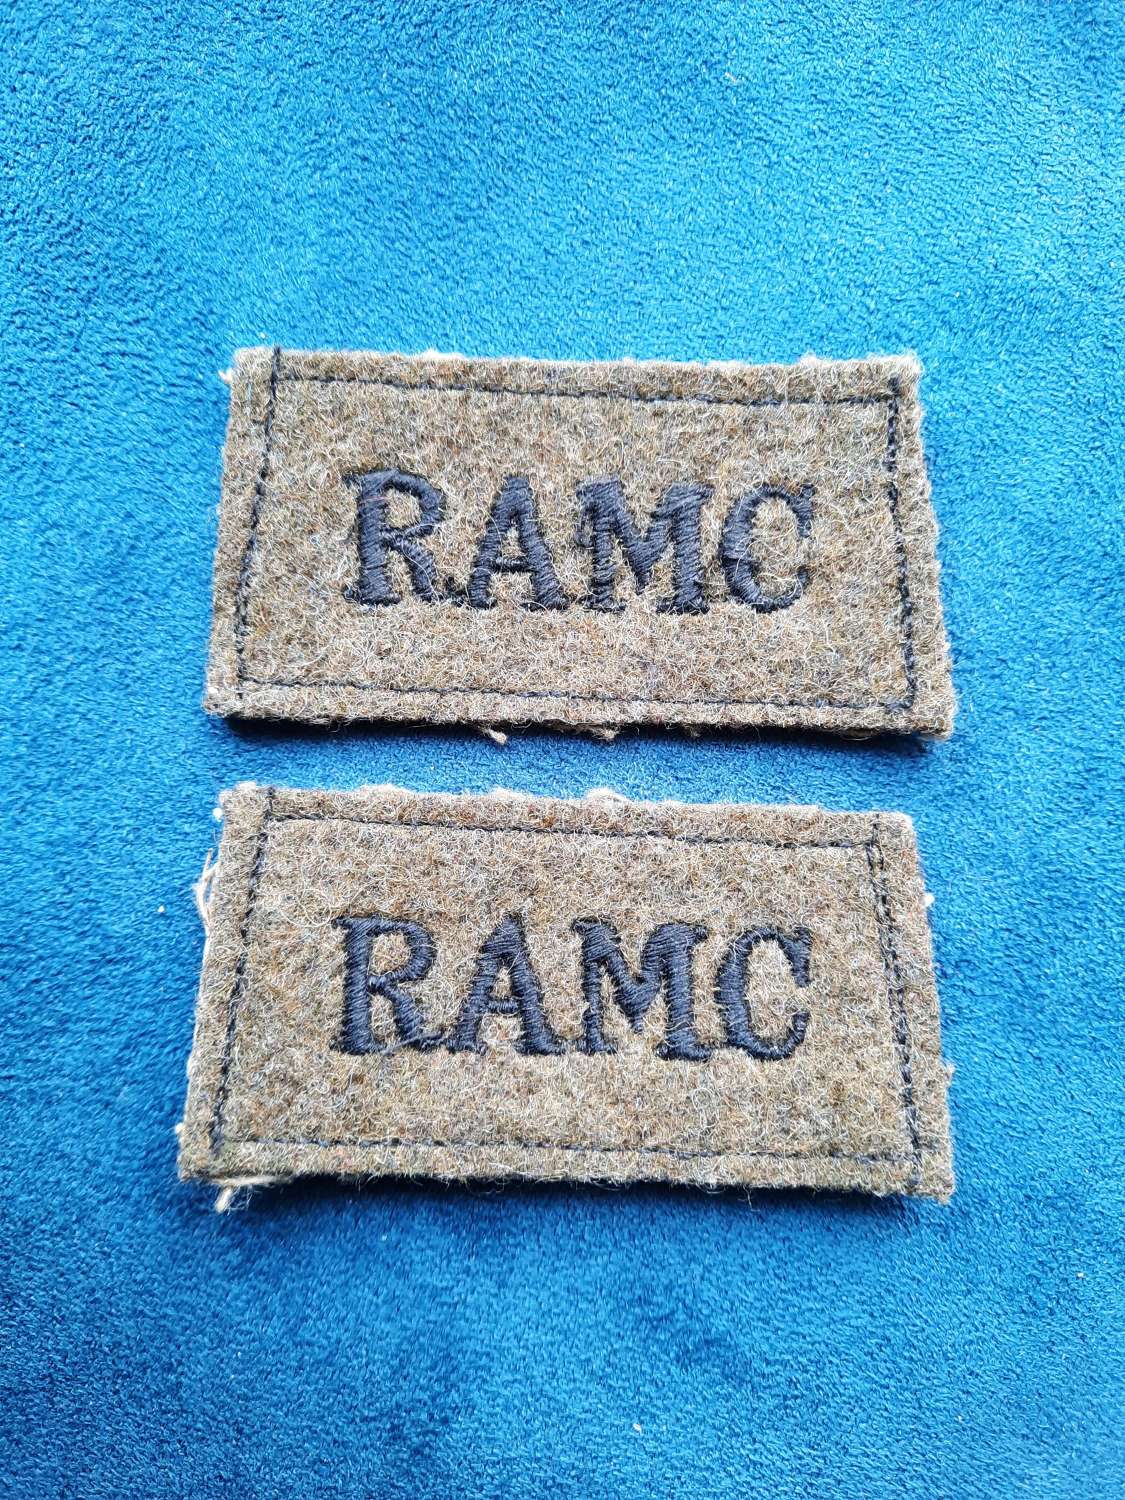 RAMC Slip On Shoulder Titles